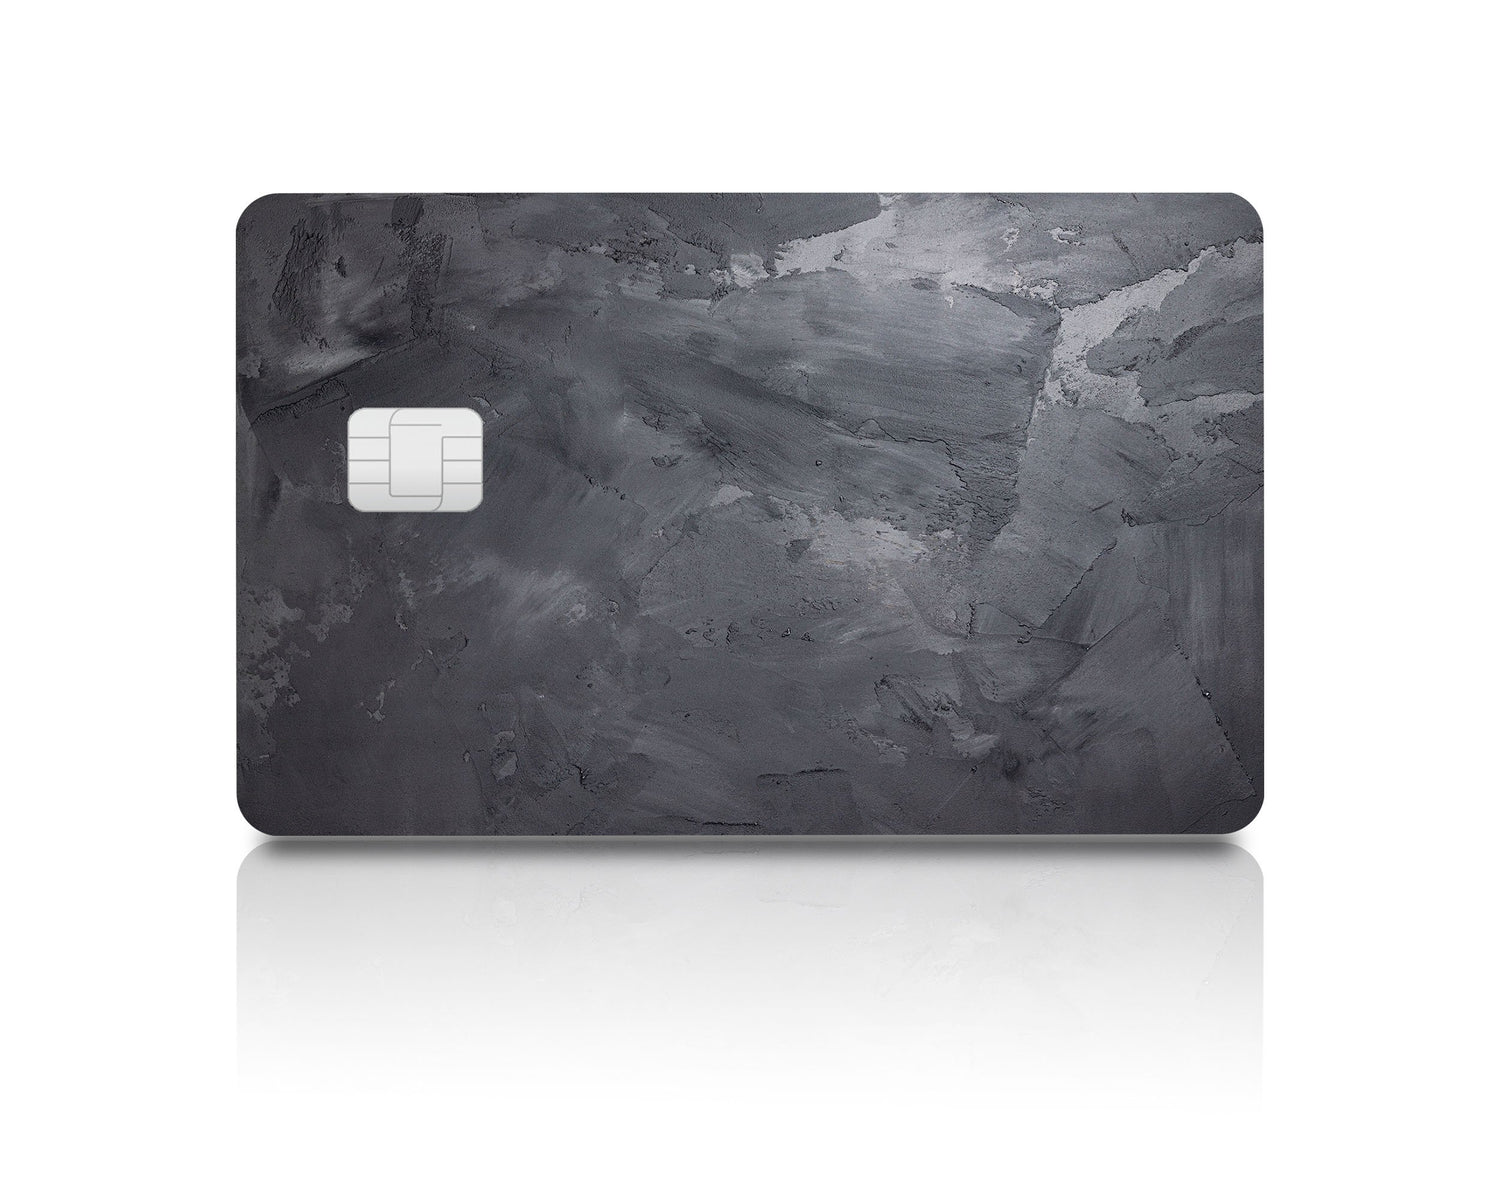 Flex Designs Credit Card Brushed Slate Full Skins - Pattern  & Debit Card Skin